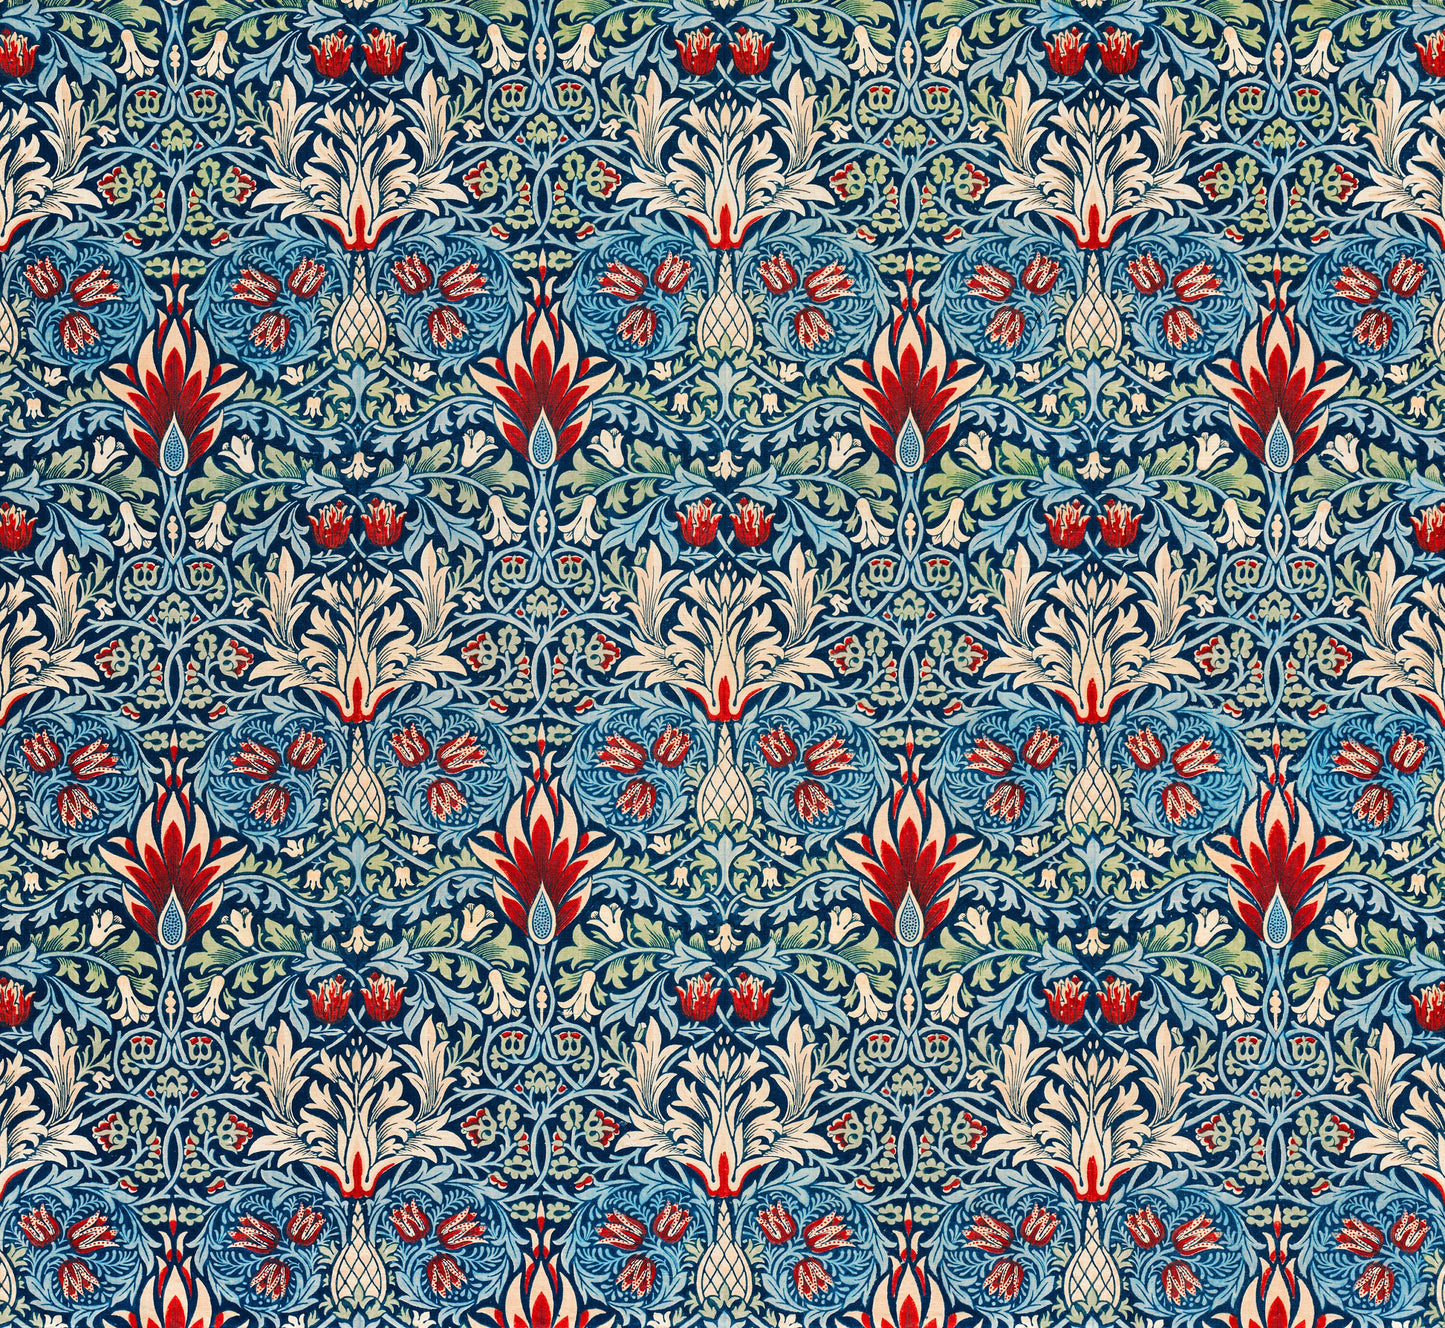 William Morris Design Patterns Set 3 [22 Images]